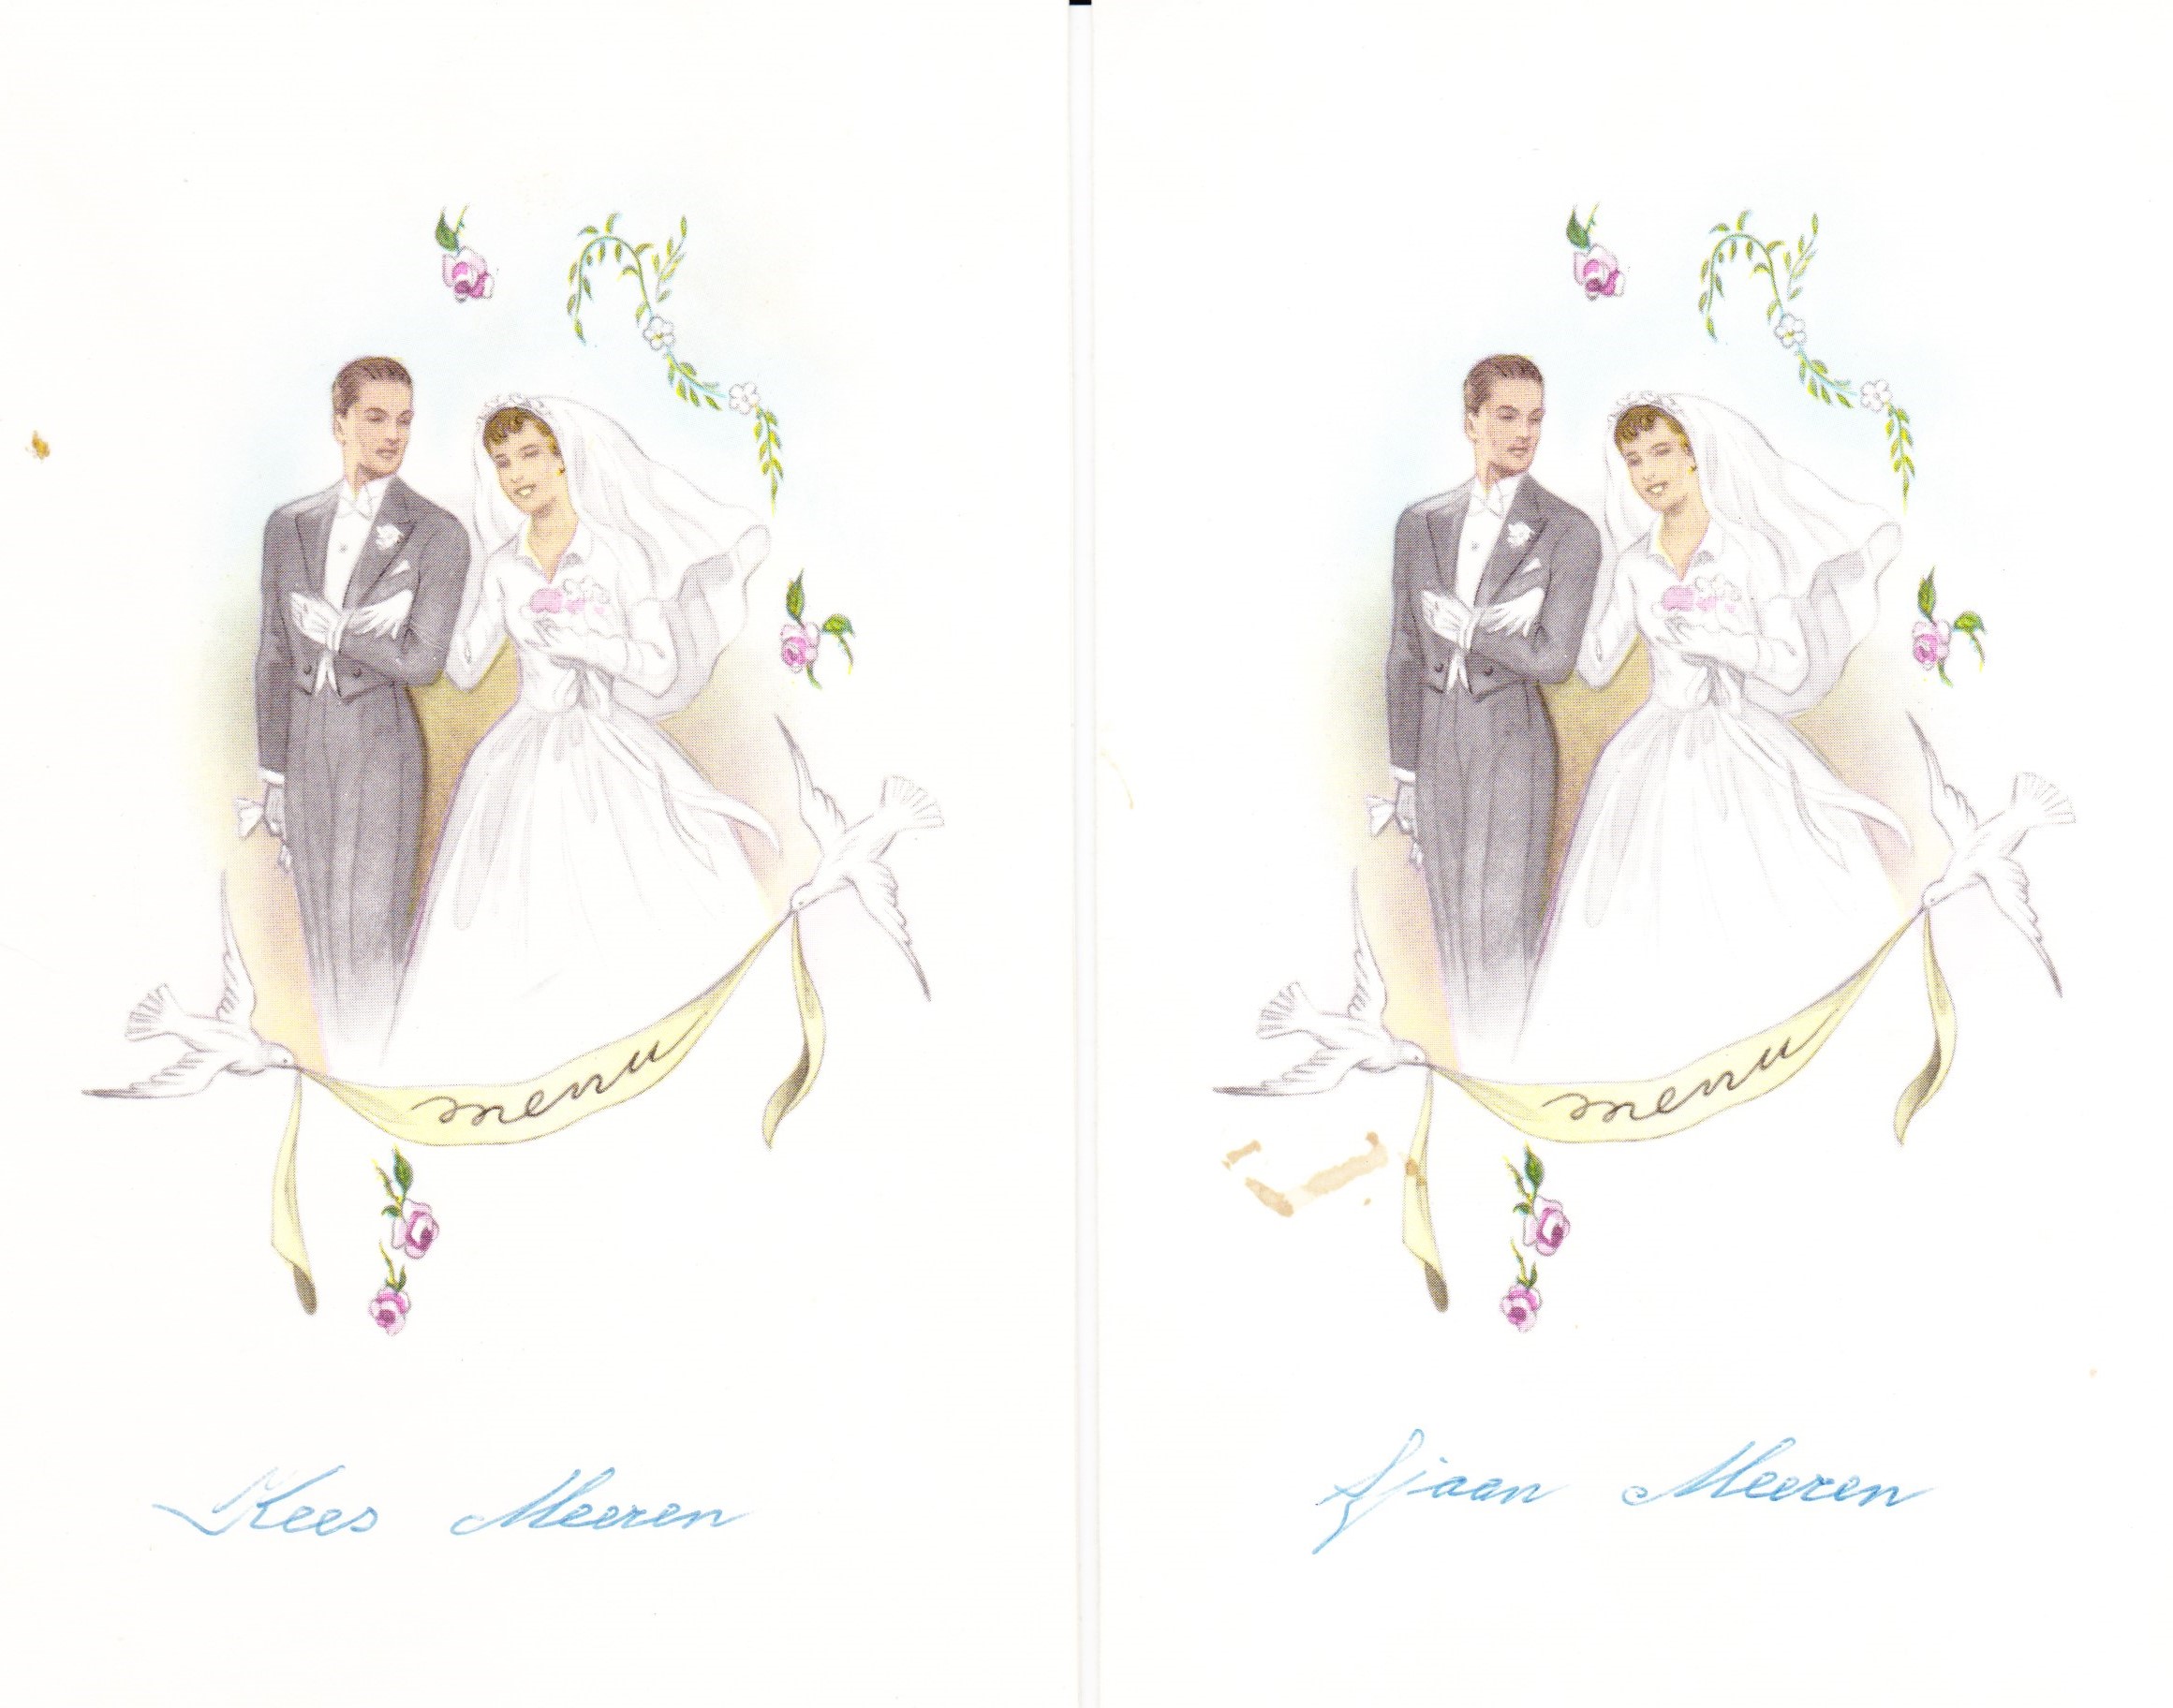 dekkers_ineke_en_jo_roijers__menukaarten_ter_gelegenheid_van_hun_huwelijk_op_donderdag_5_september_1963_in_helvoirt.jpg